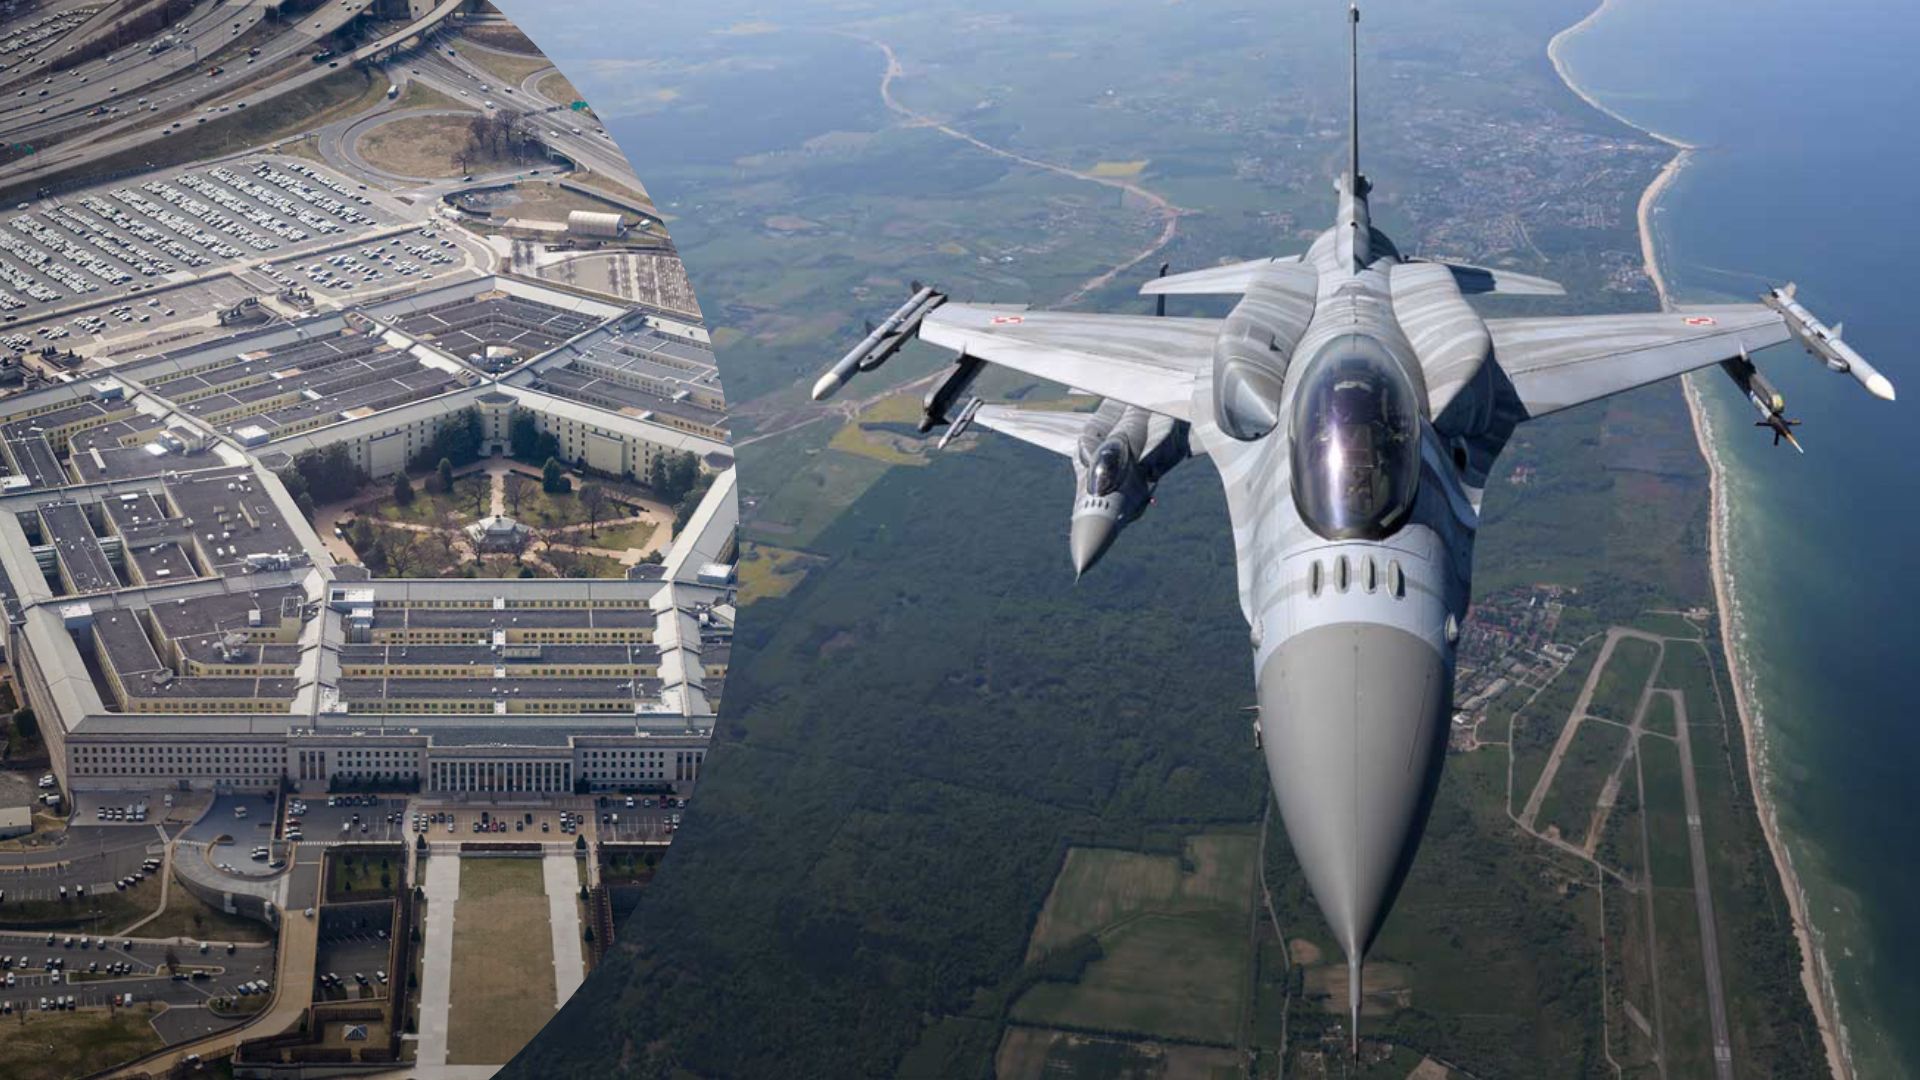 Передача F-16 для Украины – США не против, чтобы истребители предоставляли страны-союзники